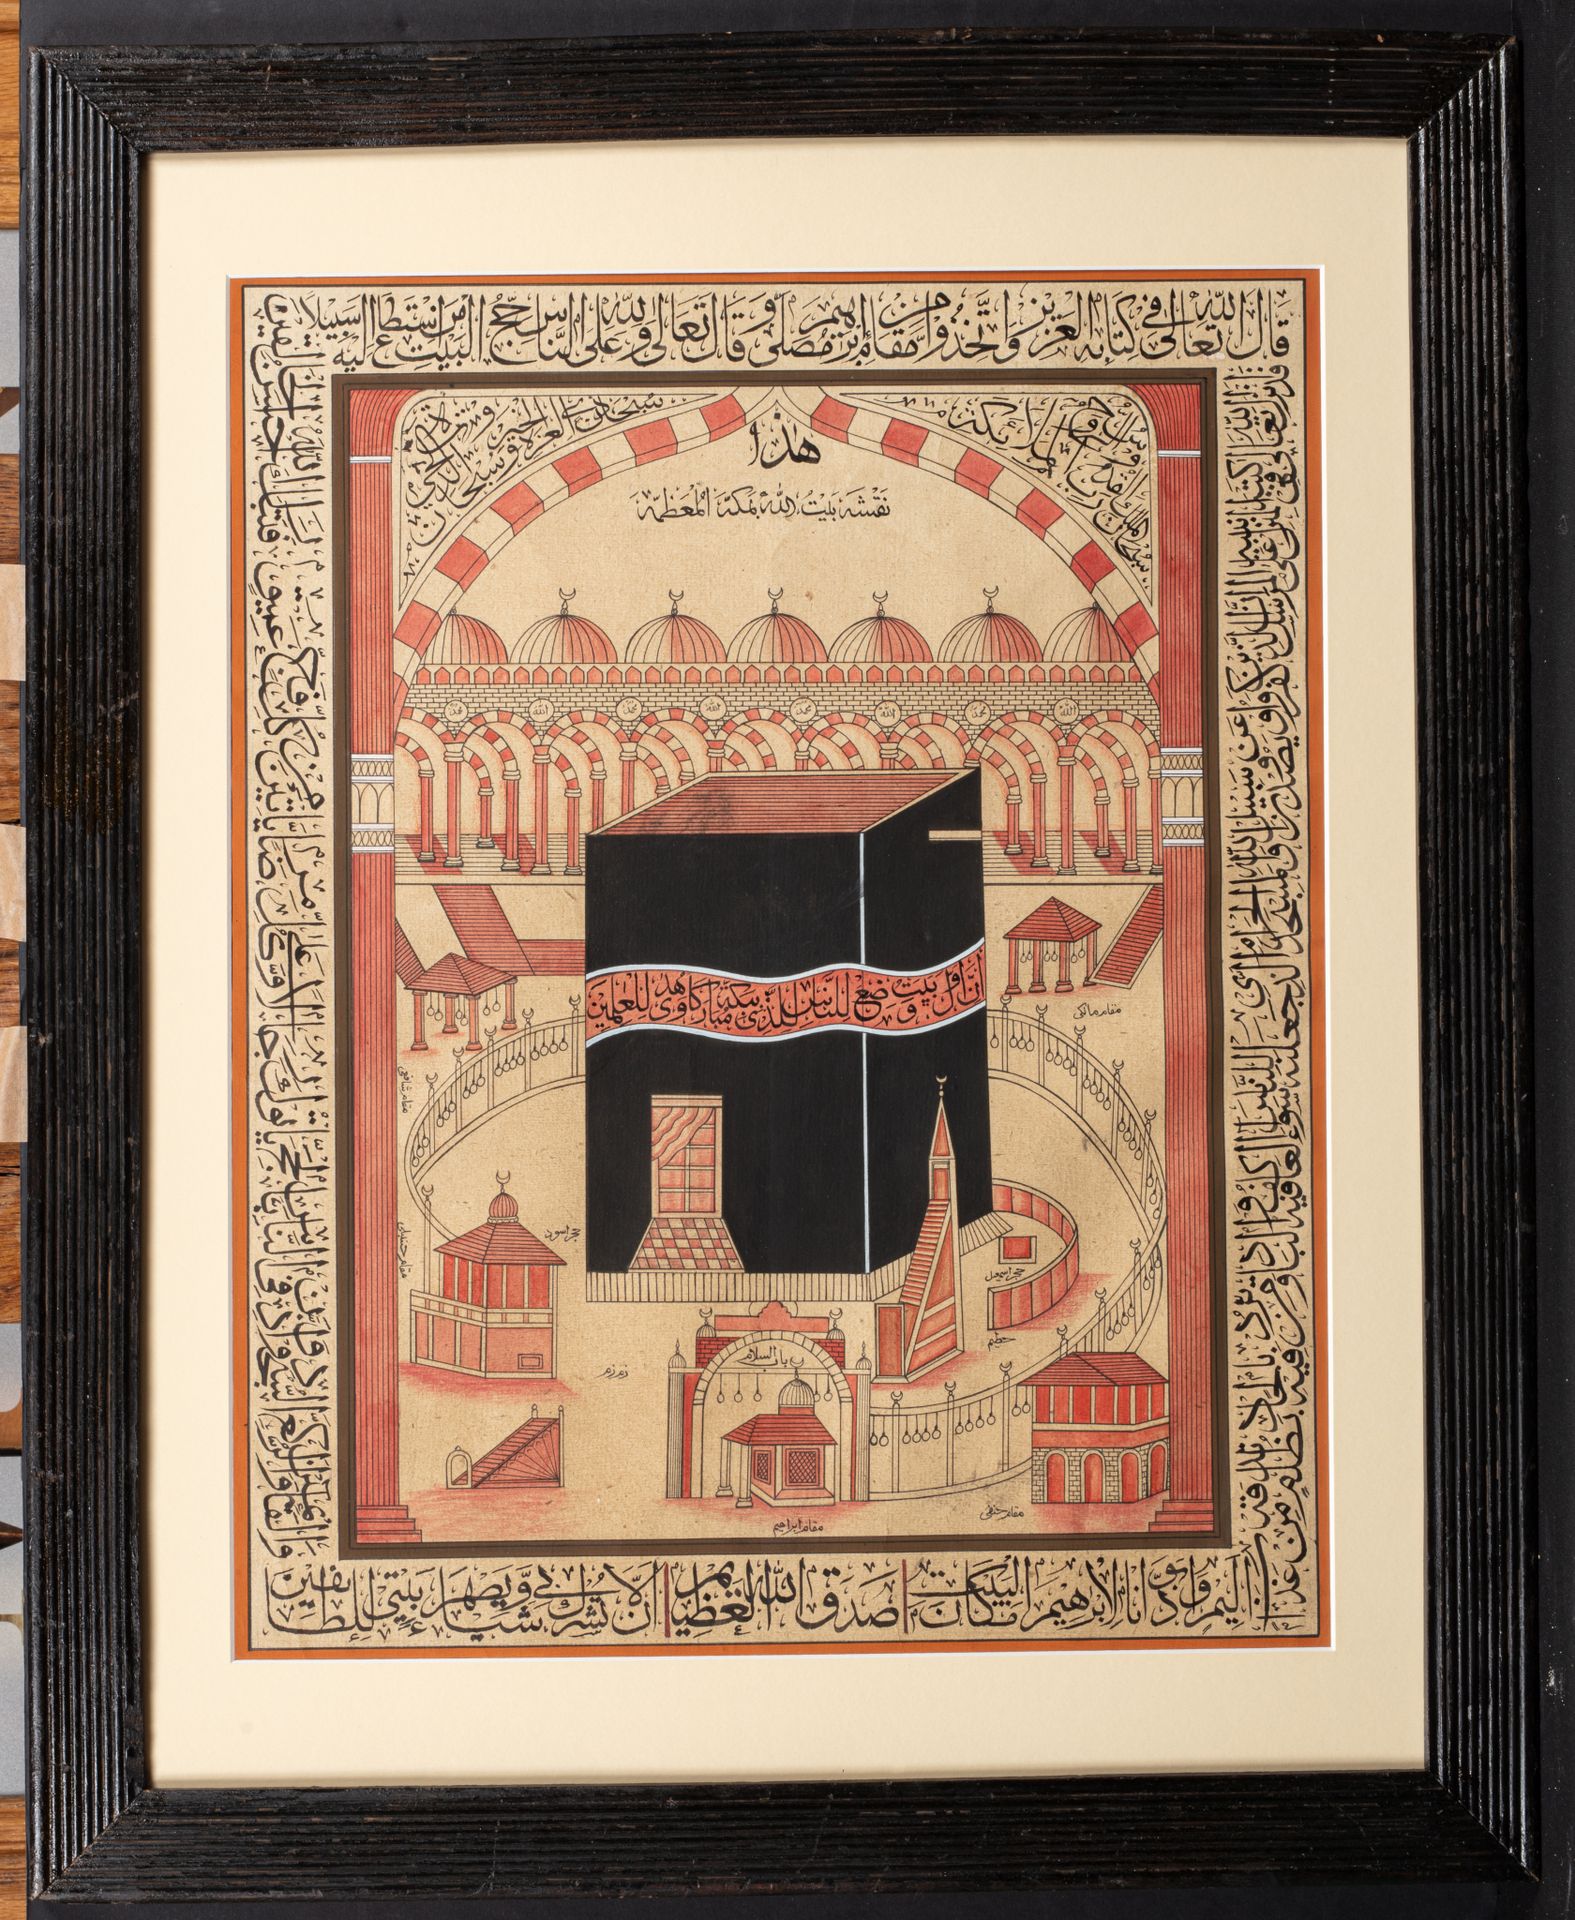 Peinture de la Mecque, Inde, 1920-1930 麦加圣殿--哈拉姆清真寺示意图

19-20世纪

用水彩和水粉加强的水墨画，表现&hellip;